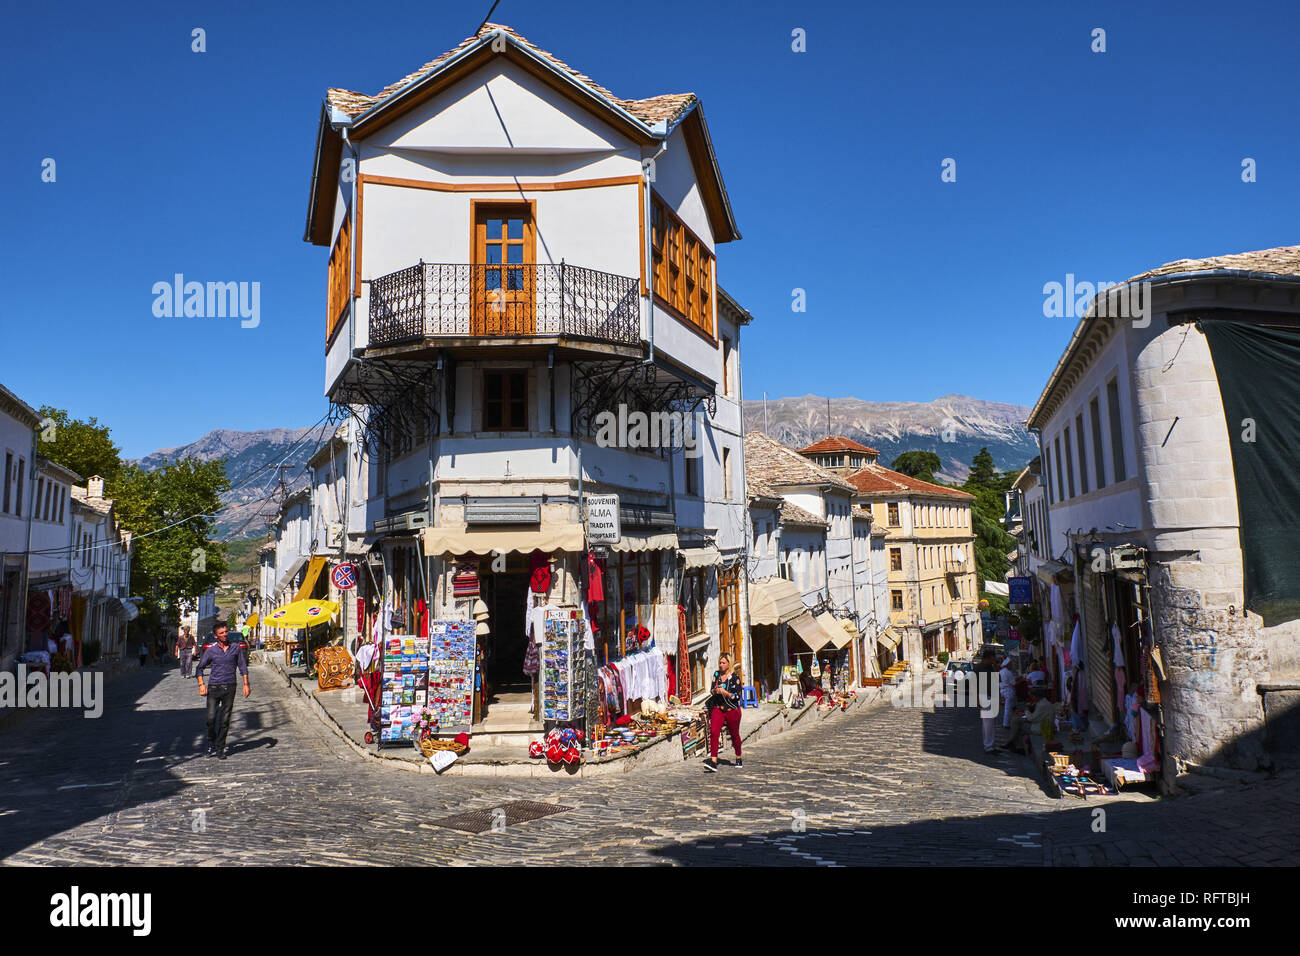 Vieille Ville, Gjirokastra (Pogradec), UNESCO World Heritage Site, Gjirokastra Province, l'Albanie, de l'Europe Banque D'Images